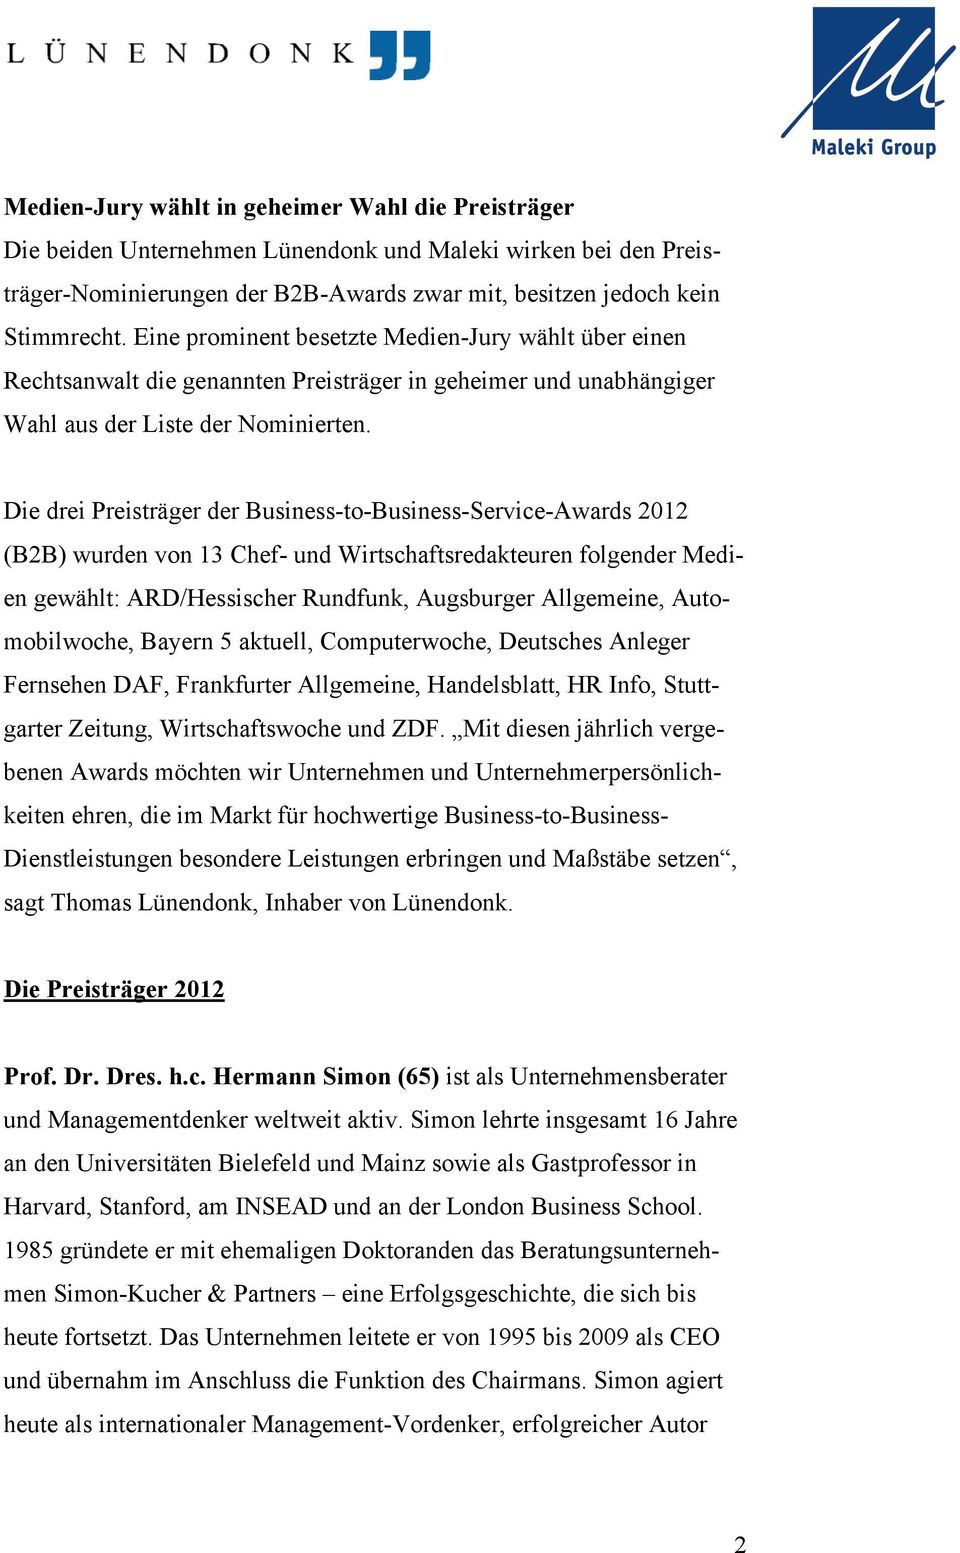 Die drei Preisträger der Business-to-Business-Service-Awards 2012 (B2B) wurden von 13 Chef- und Wirtschaftsredakteuren folgender Medien gewählt: ARD/Hessischer Rundfunk, Augsburger Allgemeine,